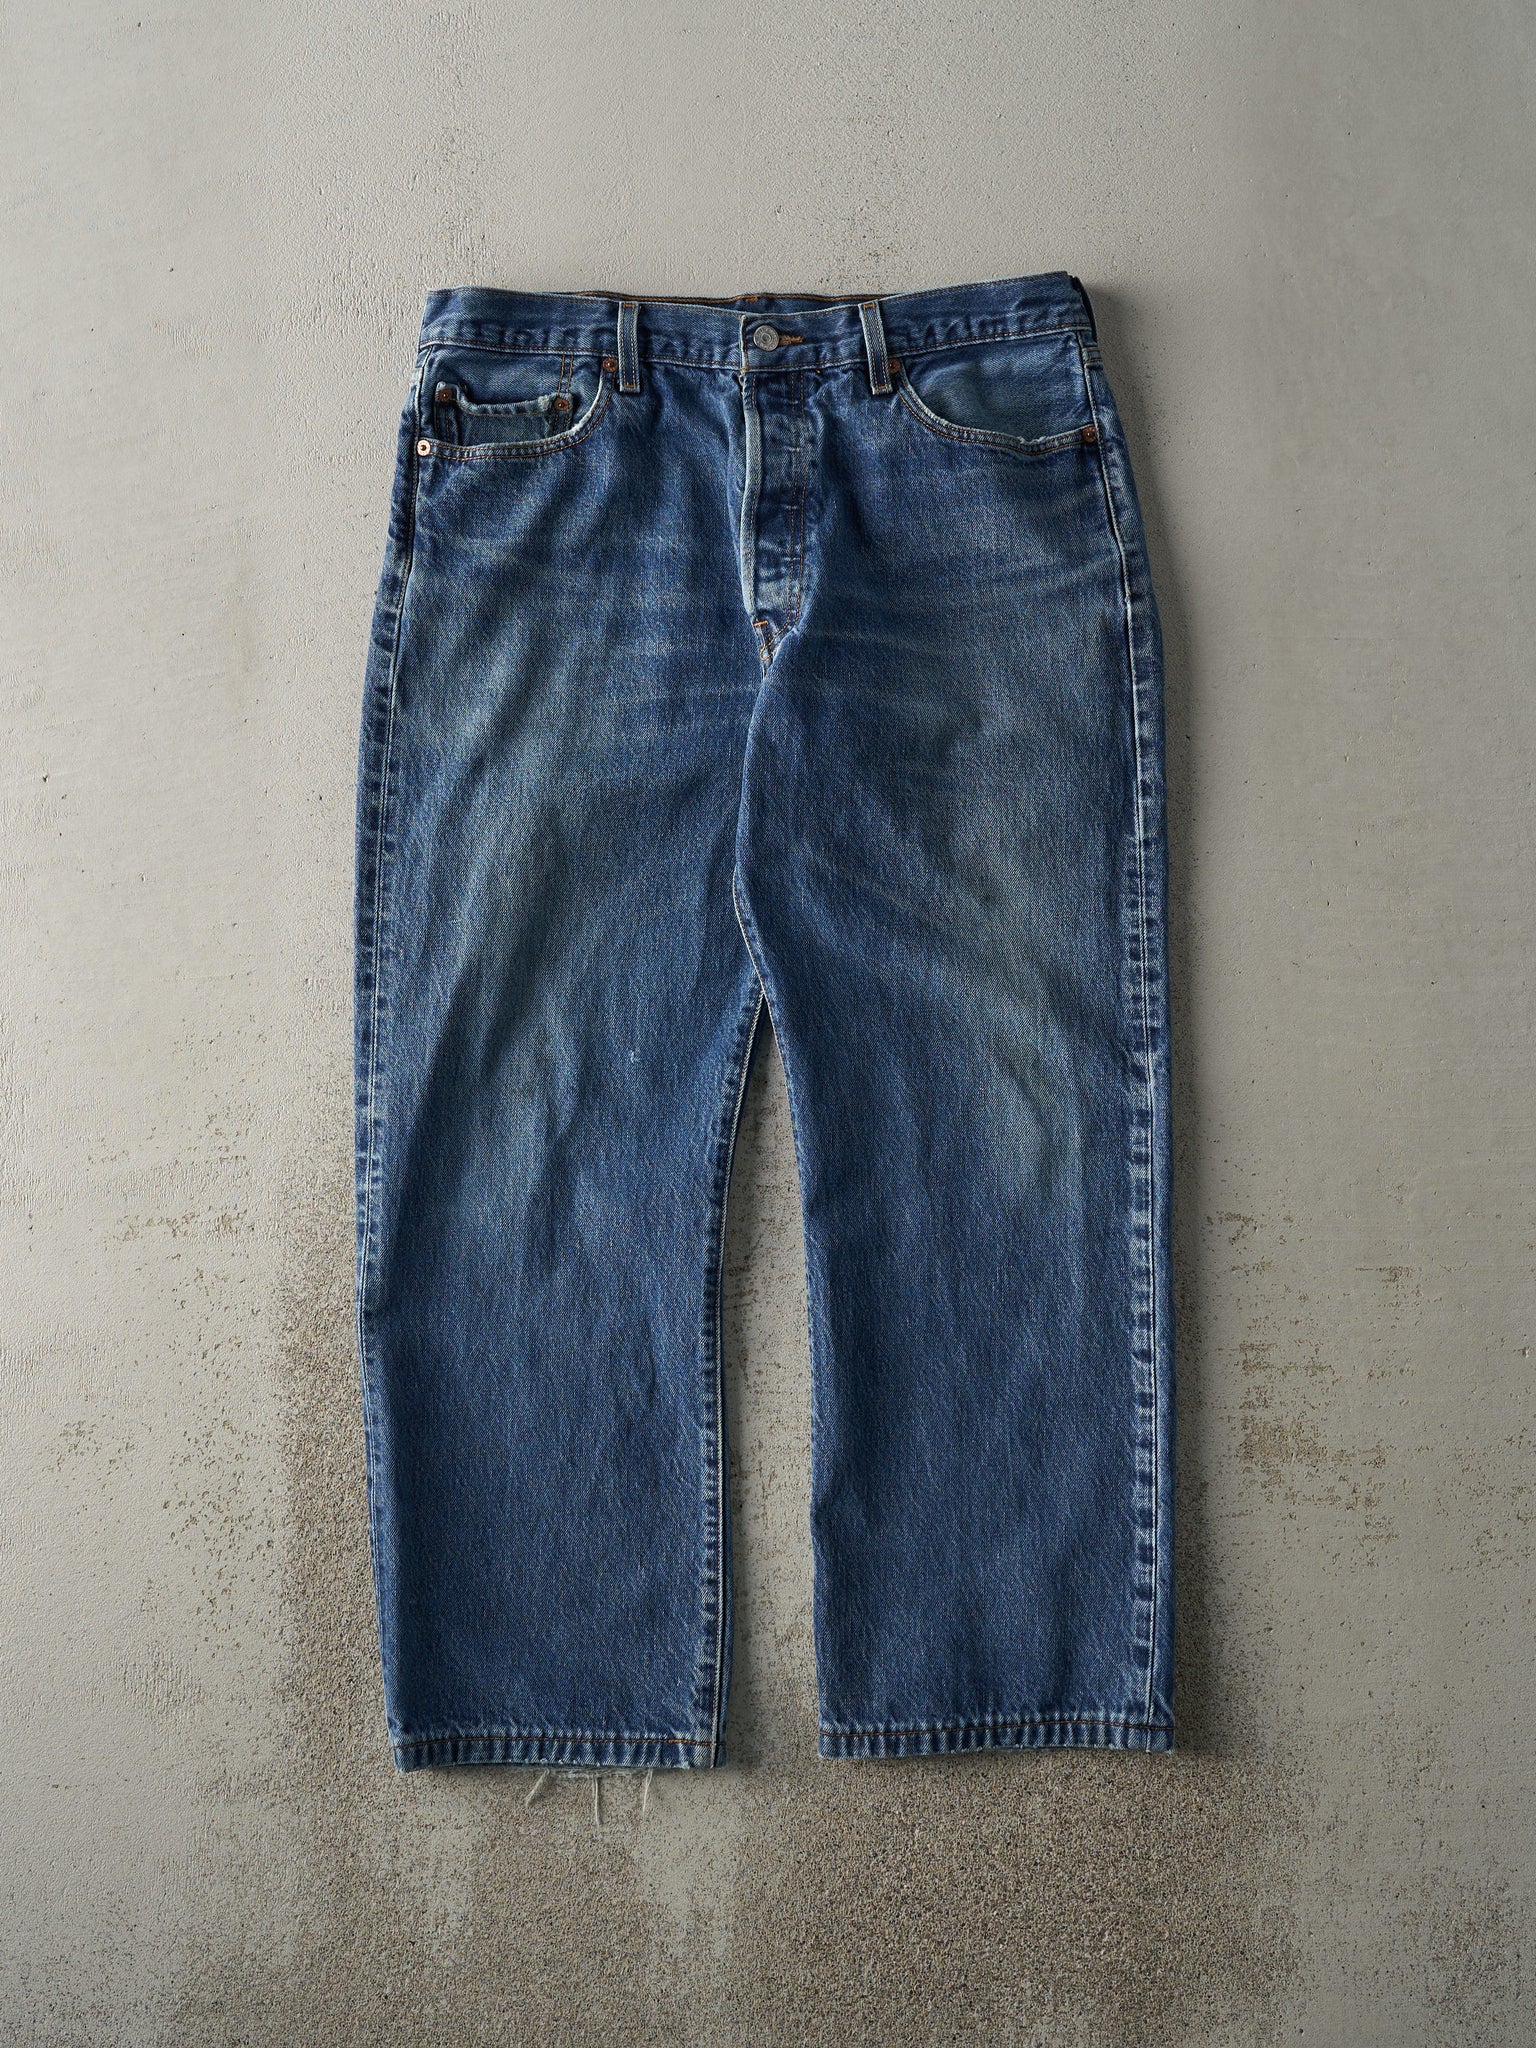 Vintage 90s Dark Wash Levi's 501 Jeans (36x27.5)